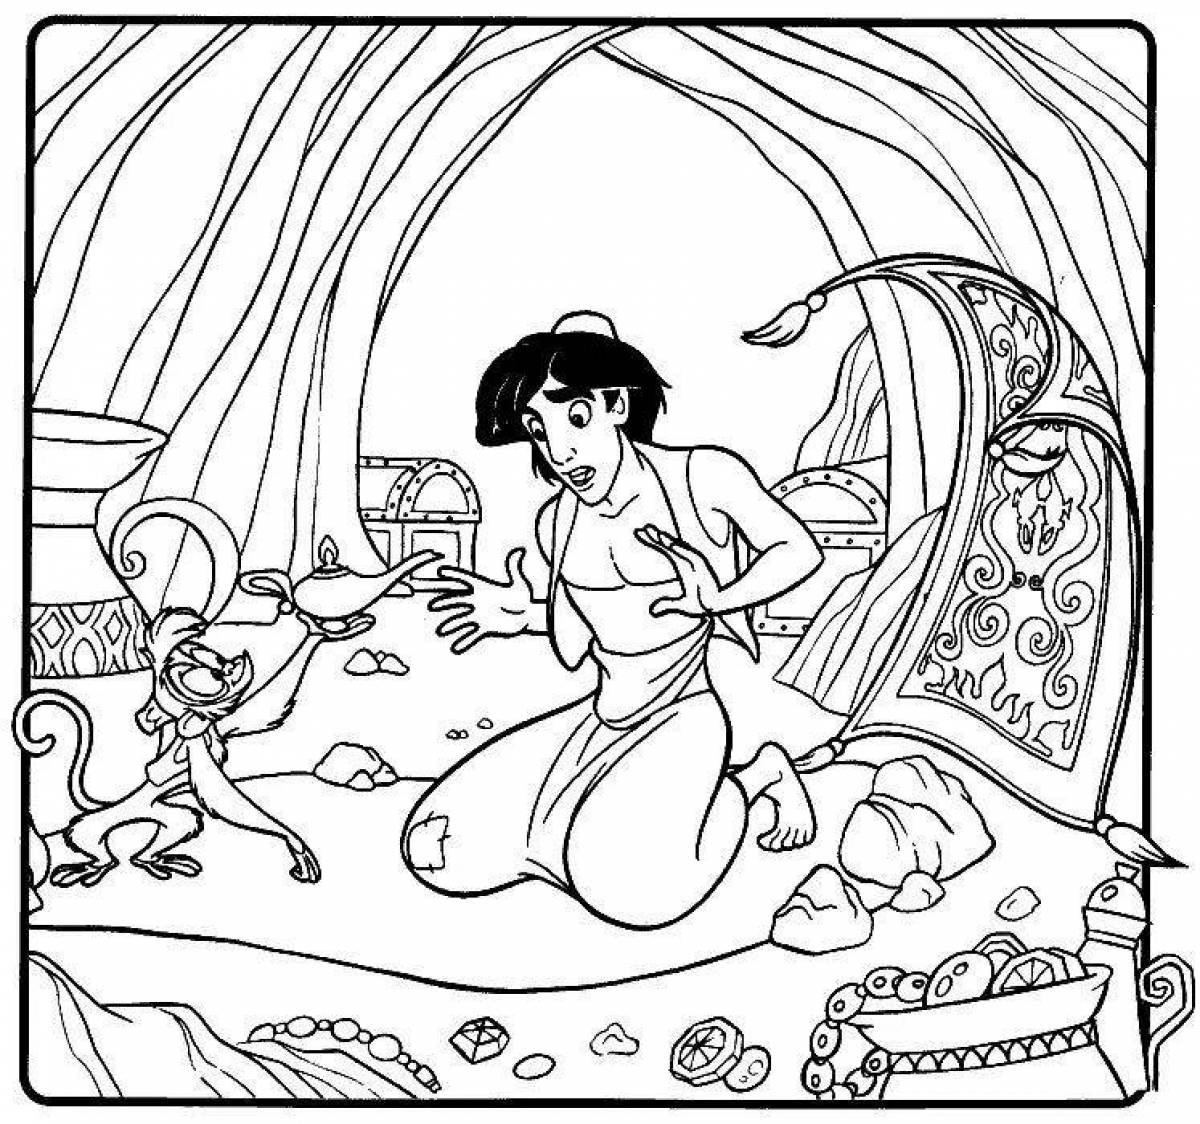 Dazzling Aladdin coloring book